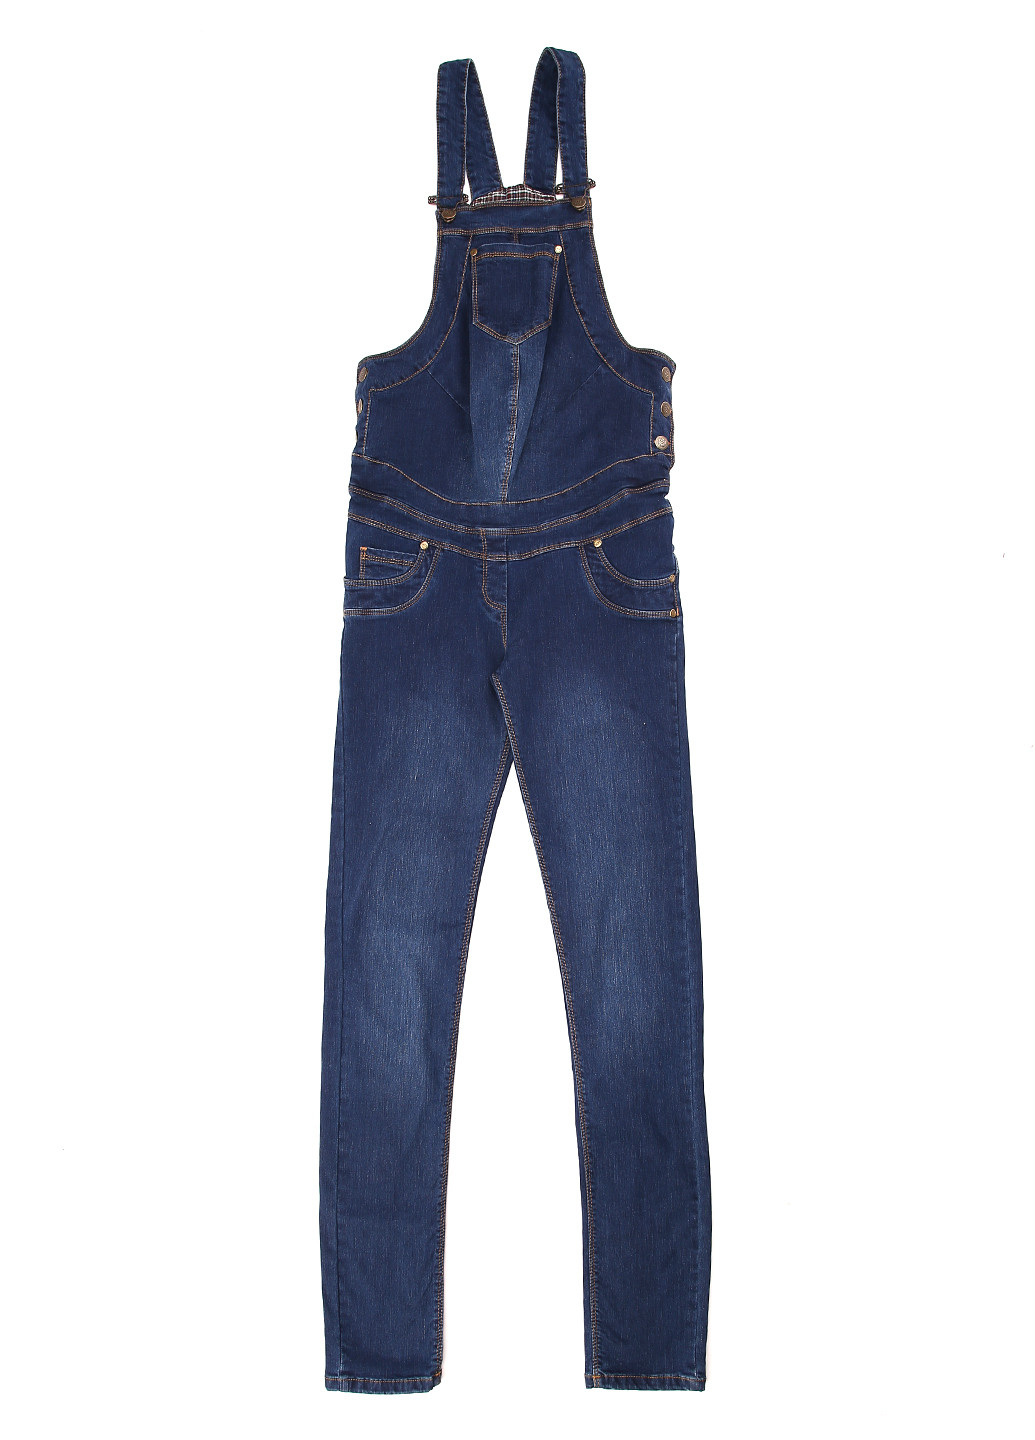 Комбінезон для вагітних Cemifa комбінезон-брюки однотонний синій джинсовий бавовна